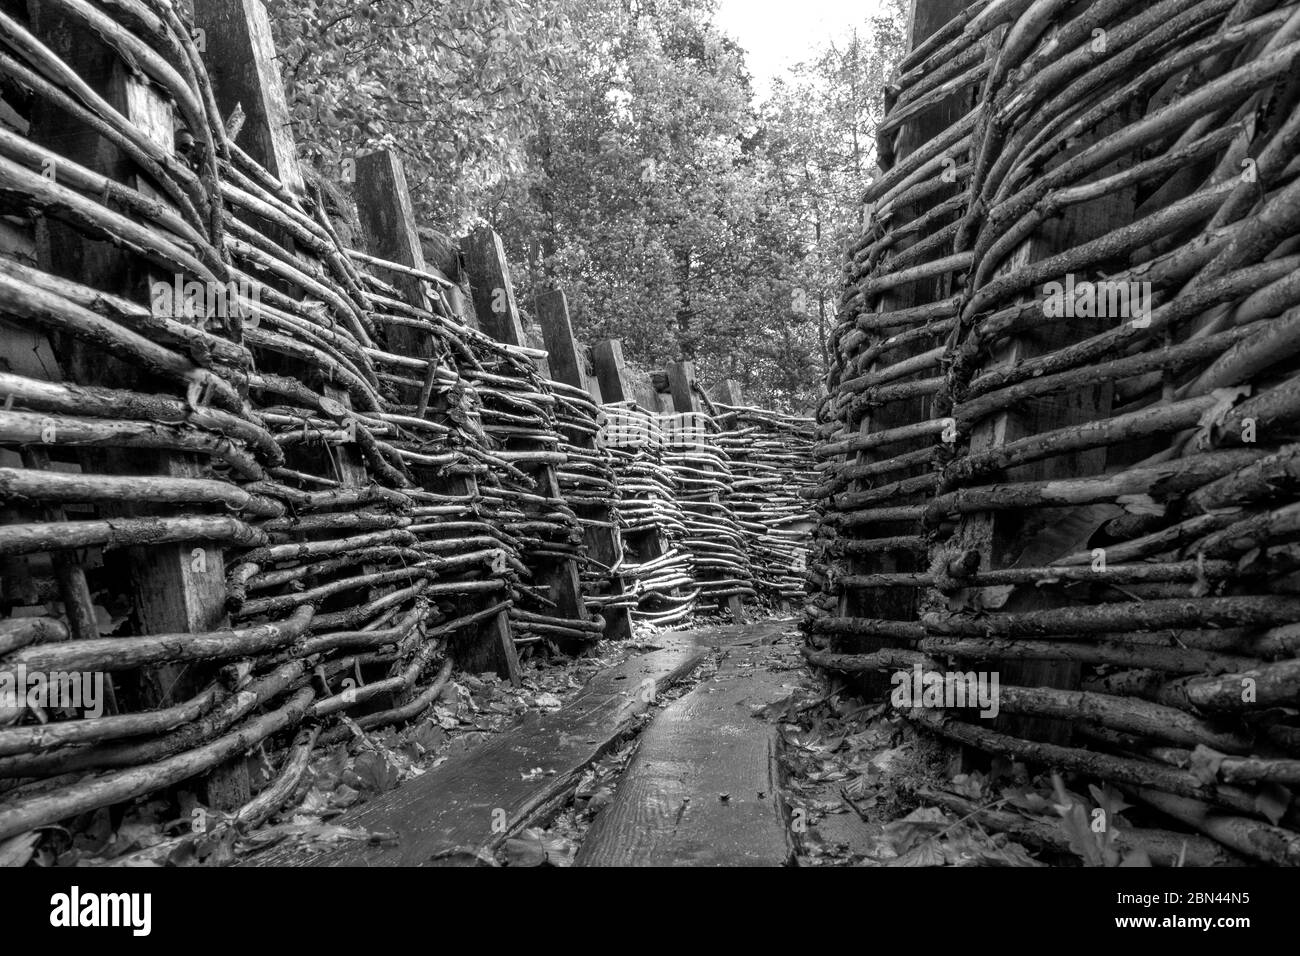 Ein deutsches Wehrgrabensystem und Bunker, die während des 1. Weltkrieges in Bayernwald (Bayern Wood) bei Ypern, Belgien, eingesetzt wurden. Stockfoto